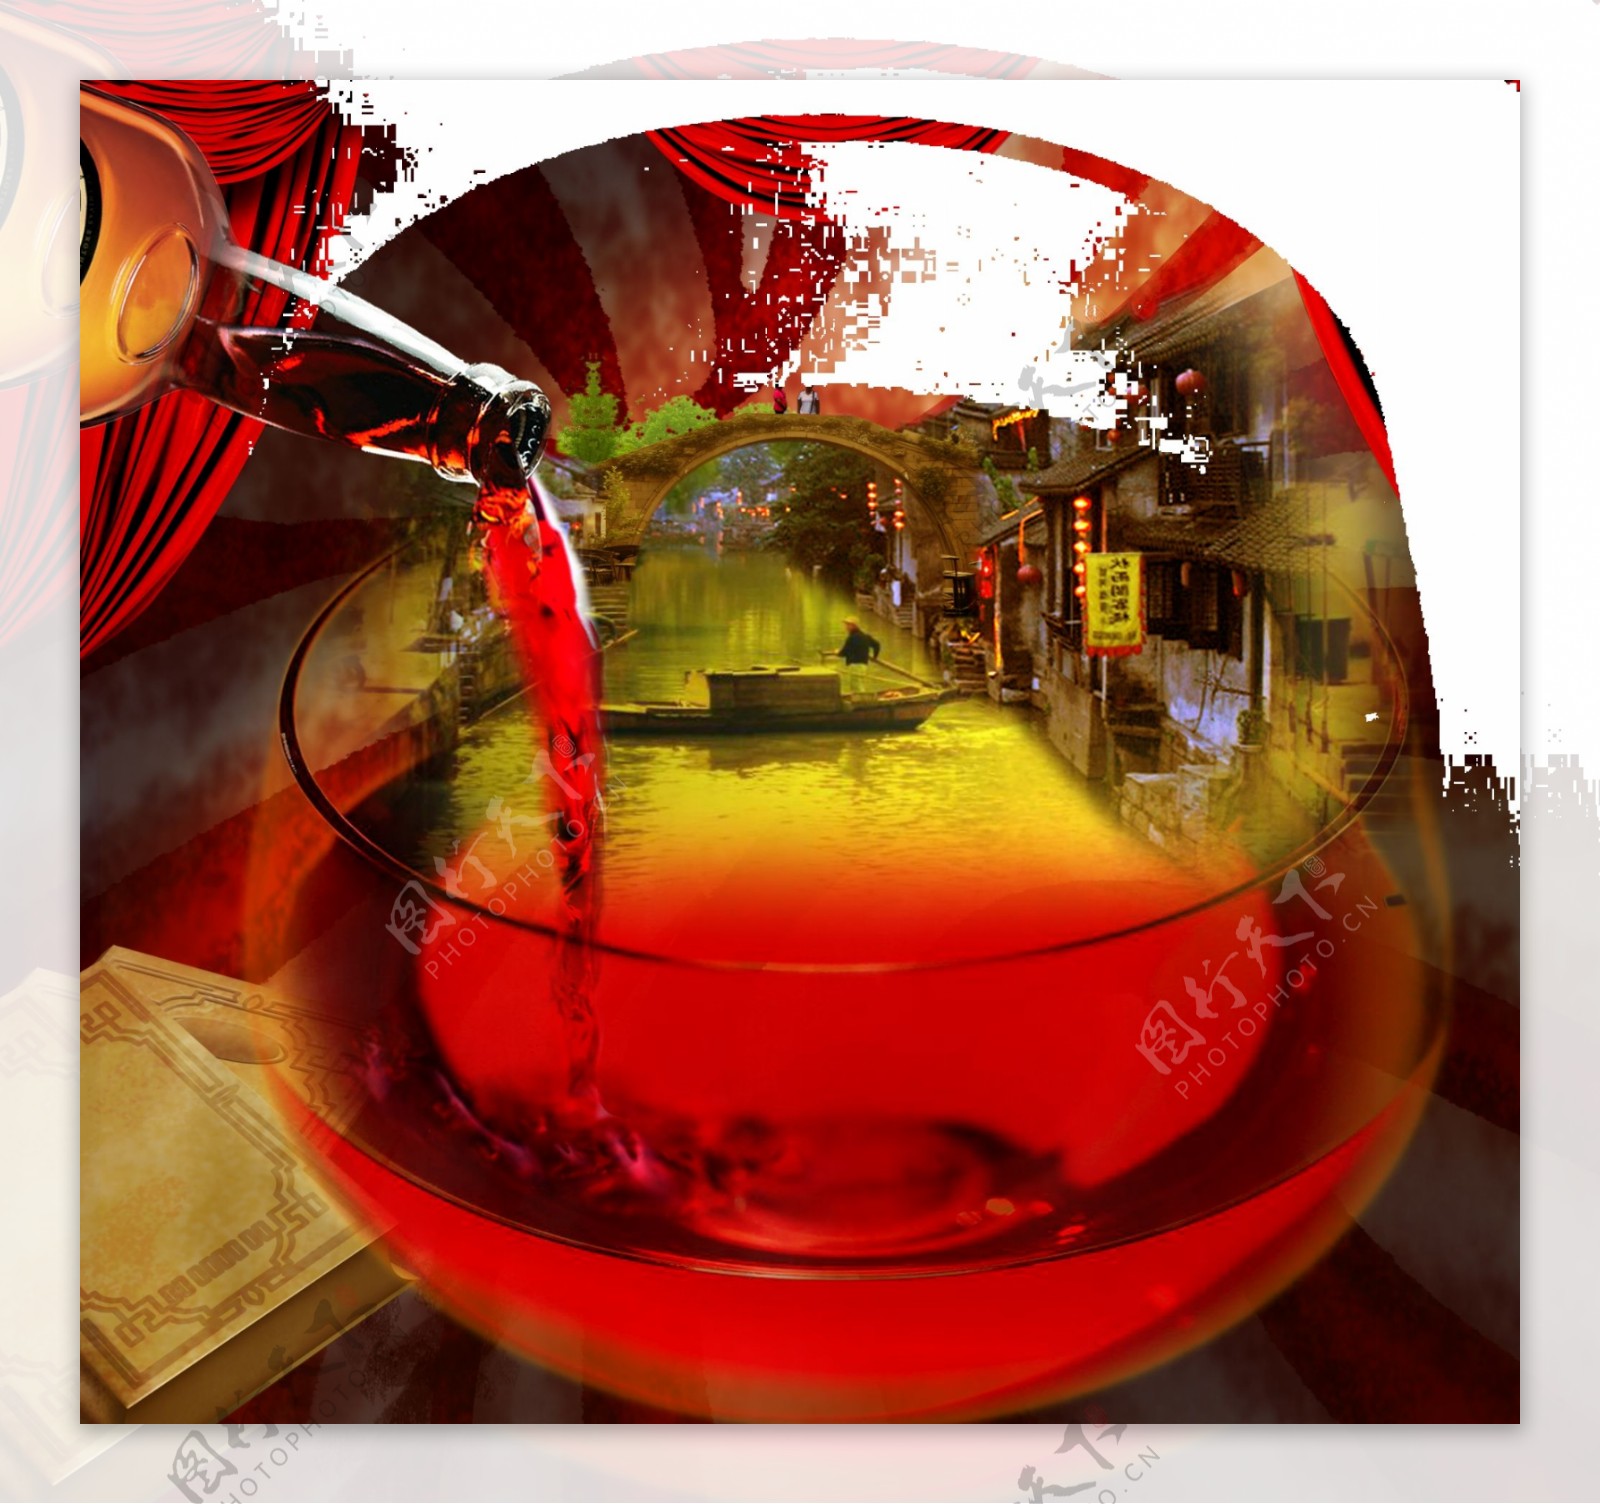 鱼米之乡红酒广告红酒创意设计图片